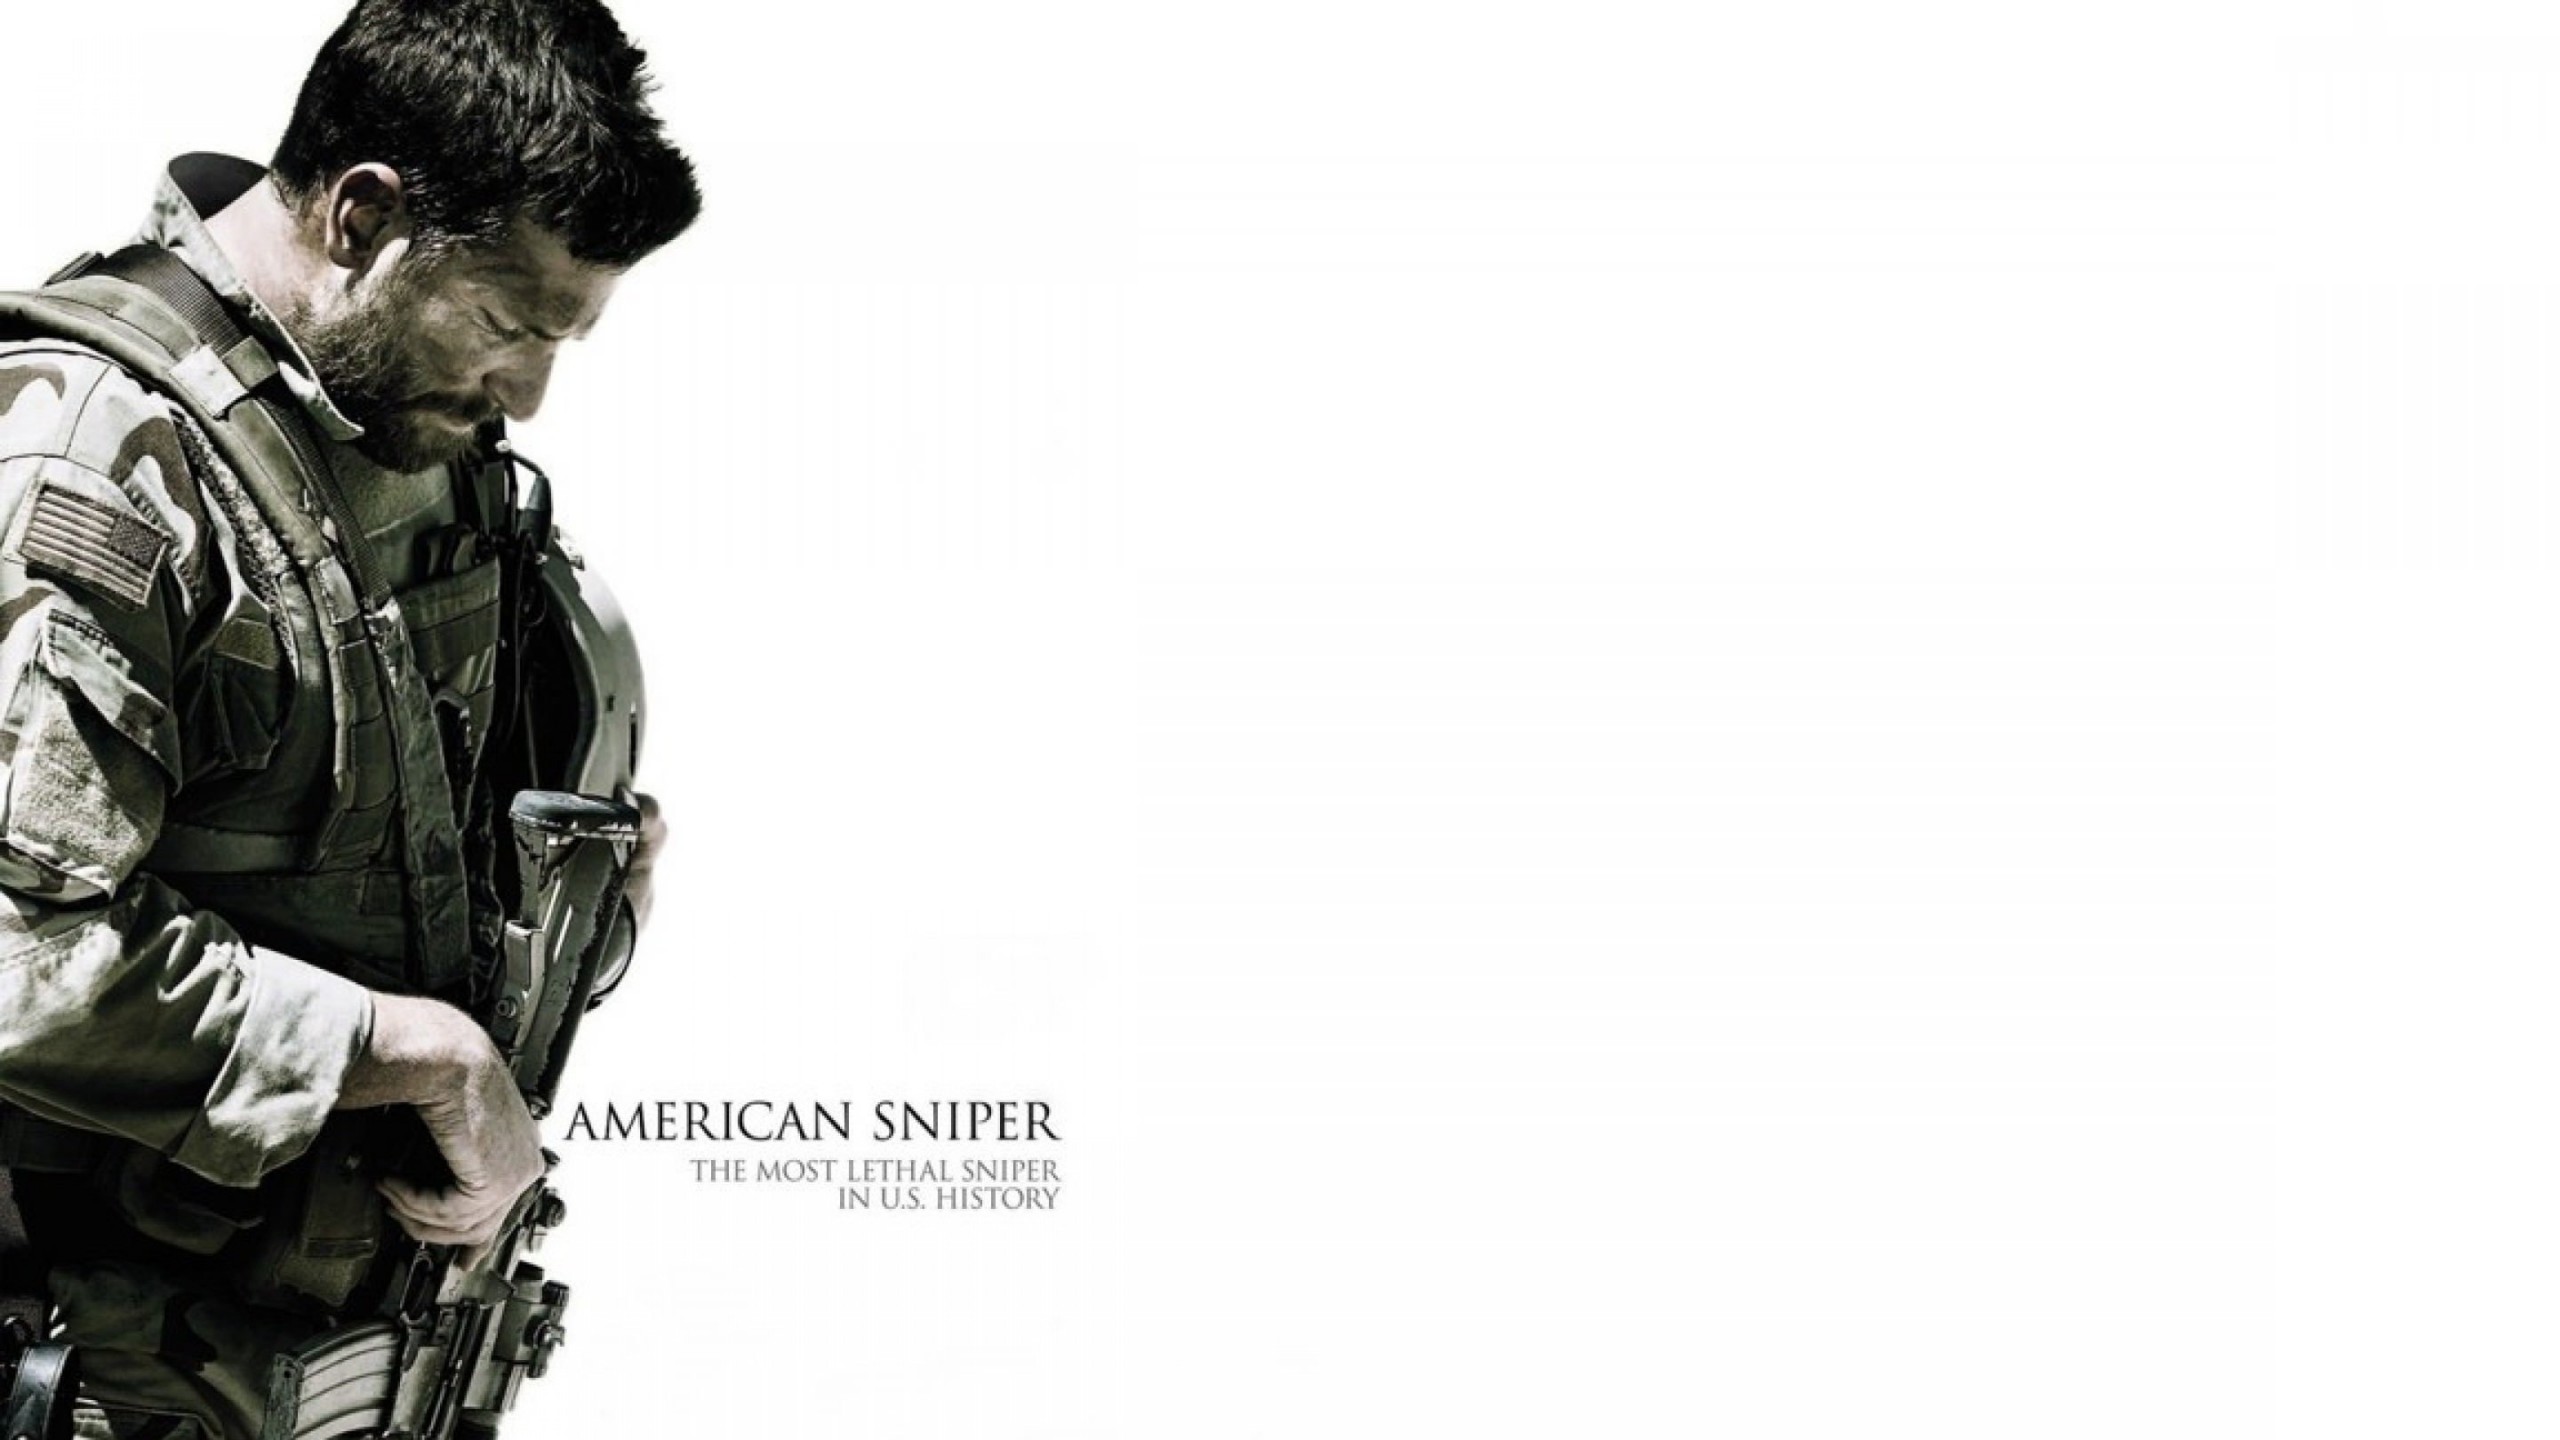 Bradley Cooper As Chris Kyle in American sniper Wallpaper for Social Media YouTube Channel Art